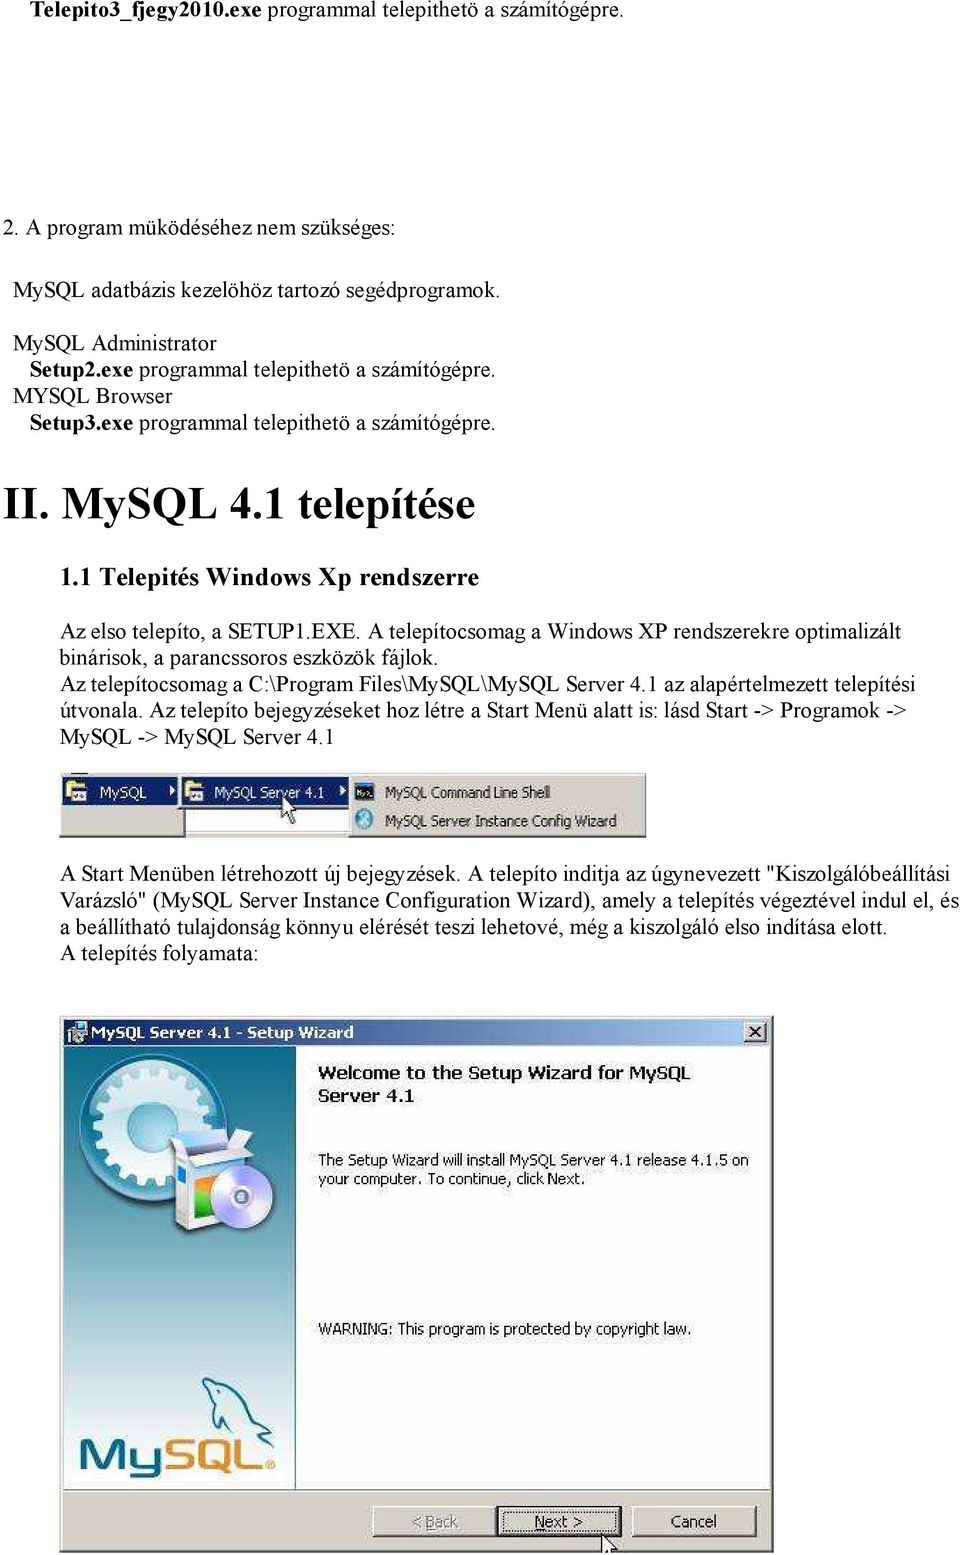 A telepítocsomag a Windows XP rendszerekre optimalizált binárisok, a parancssoros eszközök fájlok. Az telepítocsomag a C:\Program Files\MySQL\MySQL Server 4.1 az alapértelmezett telepítési útvonala.